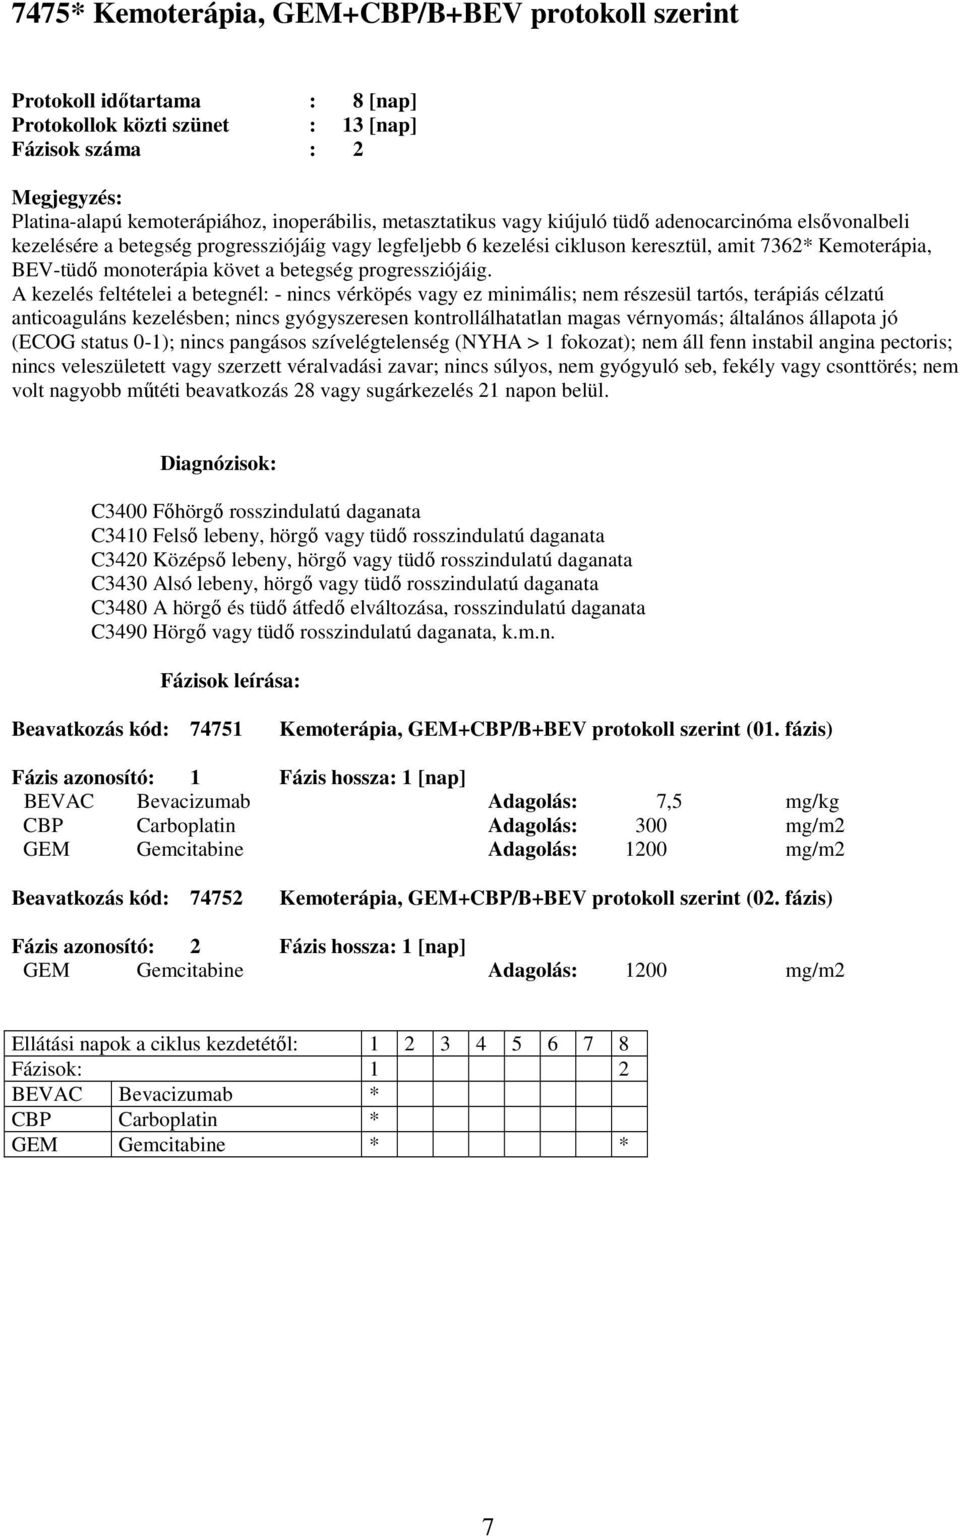 fázis) CBP Carboplatin Adagolás: 300 mg/m2 GEM Gemcitabine Adagolás: 1200 mg/m2 Beavatkozás kód: 74752 Kemoterápia,